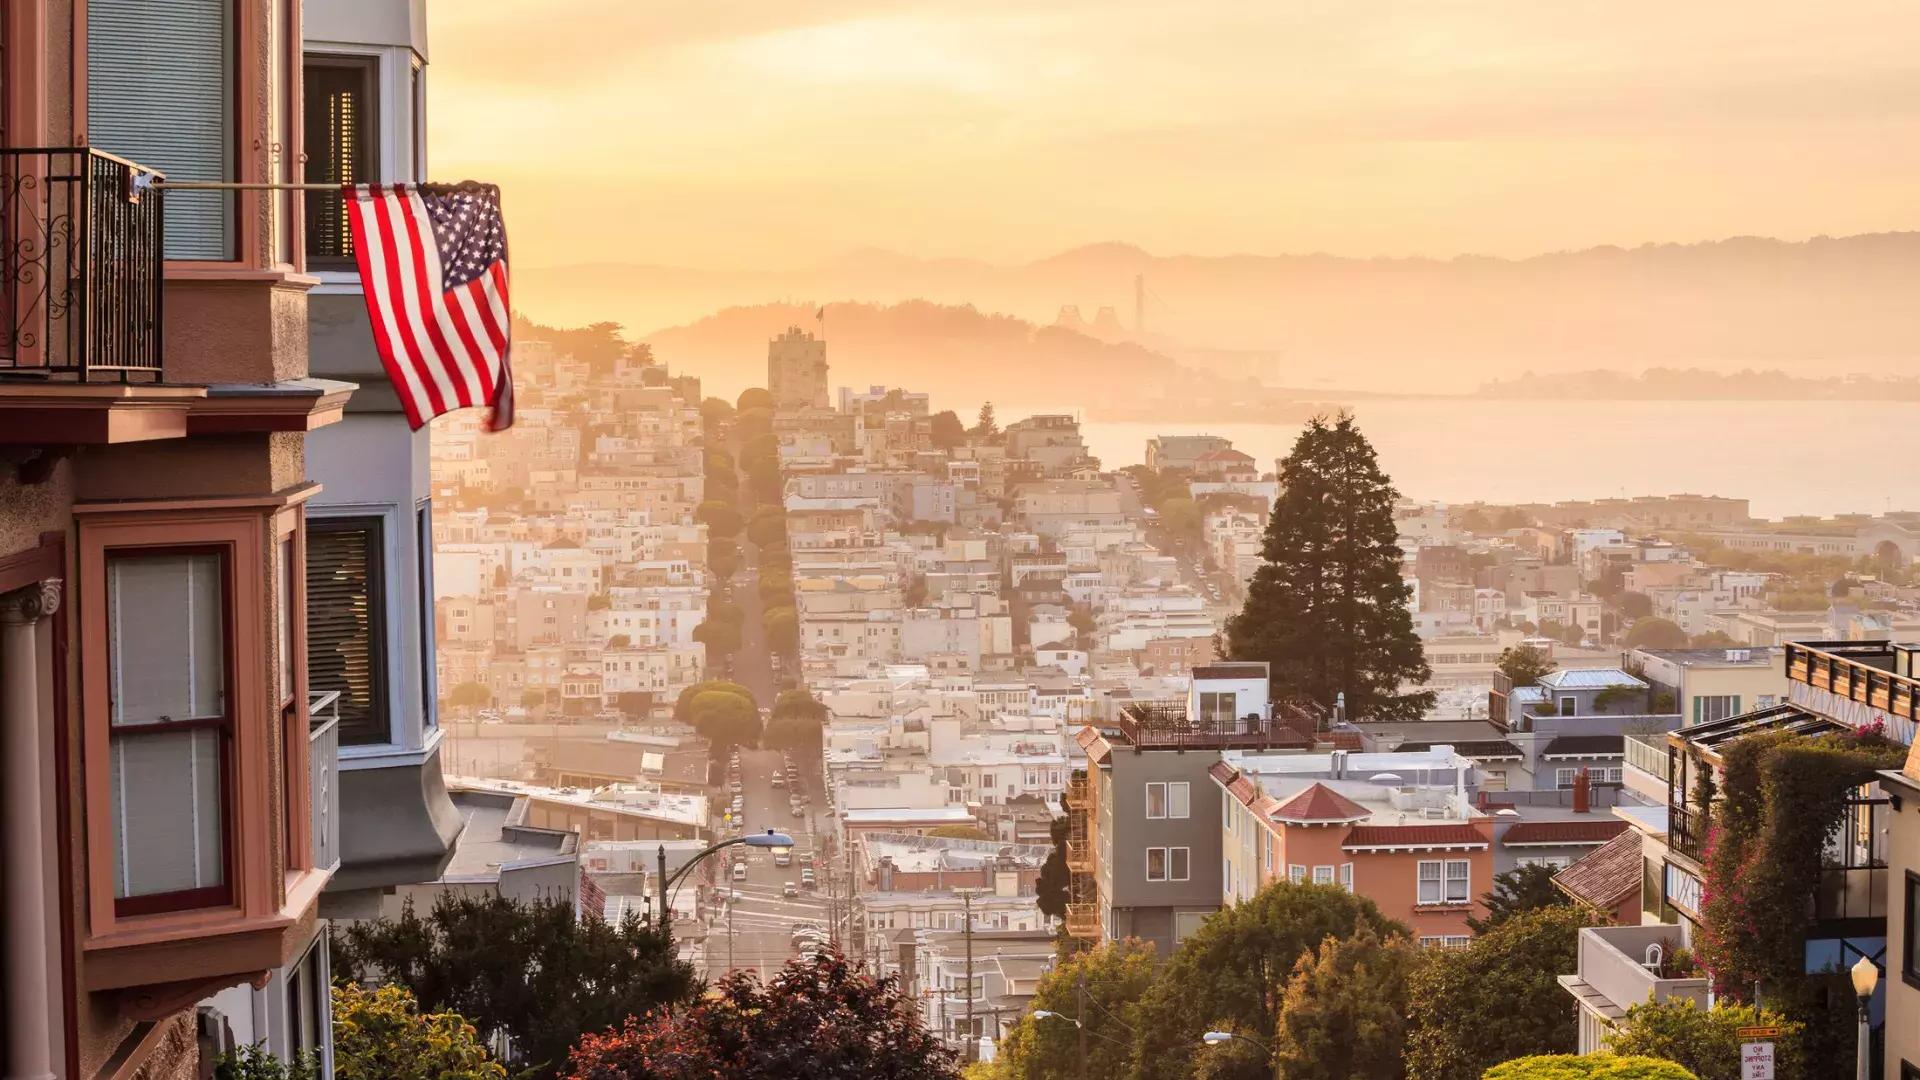 Ein Blick auf San Francisco von der Spitze eines Hügels, mit einer wehenden amerikanischen Flagge im Vordergrund.